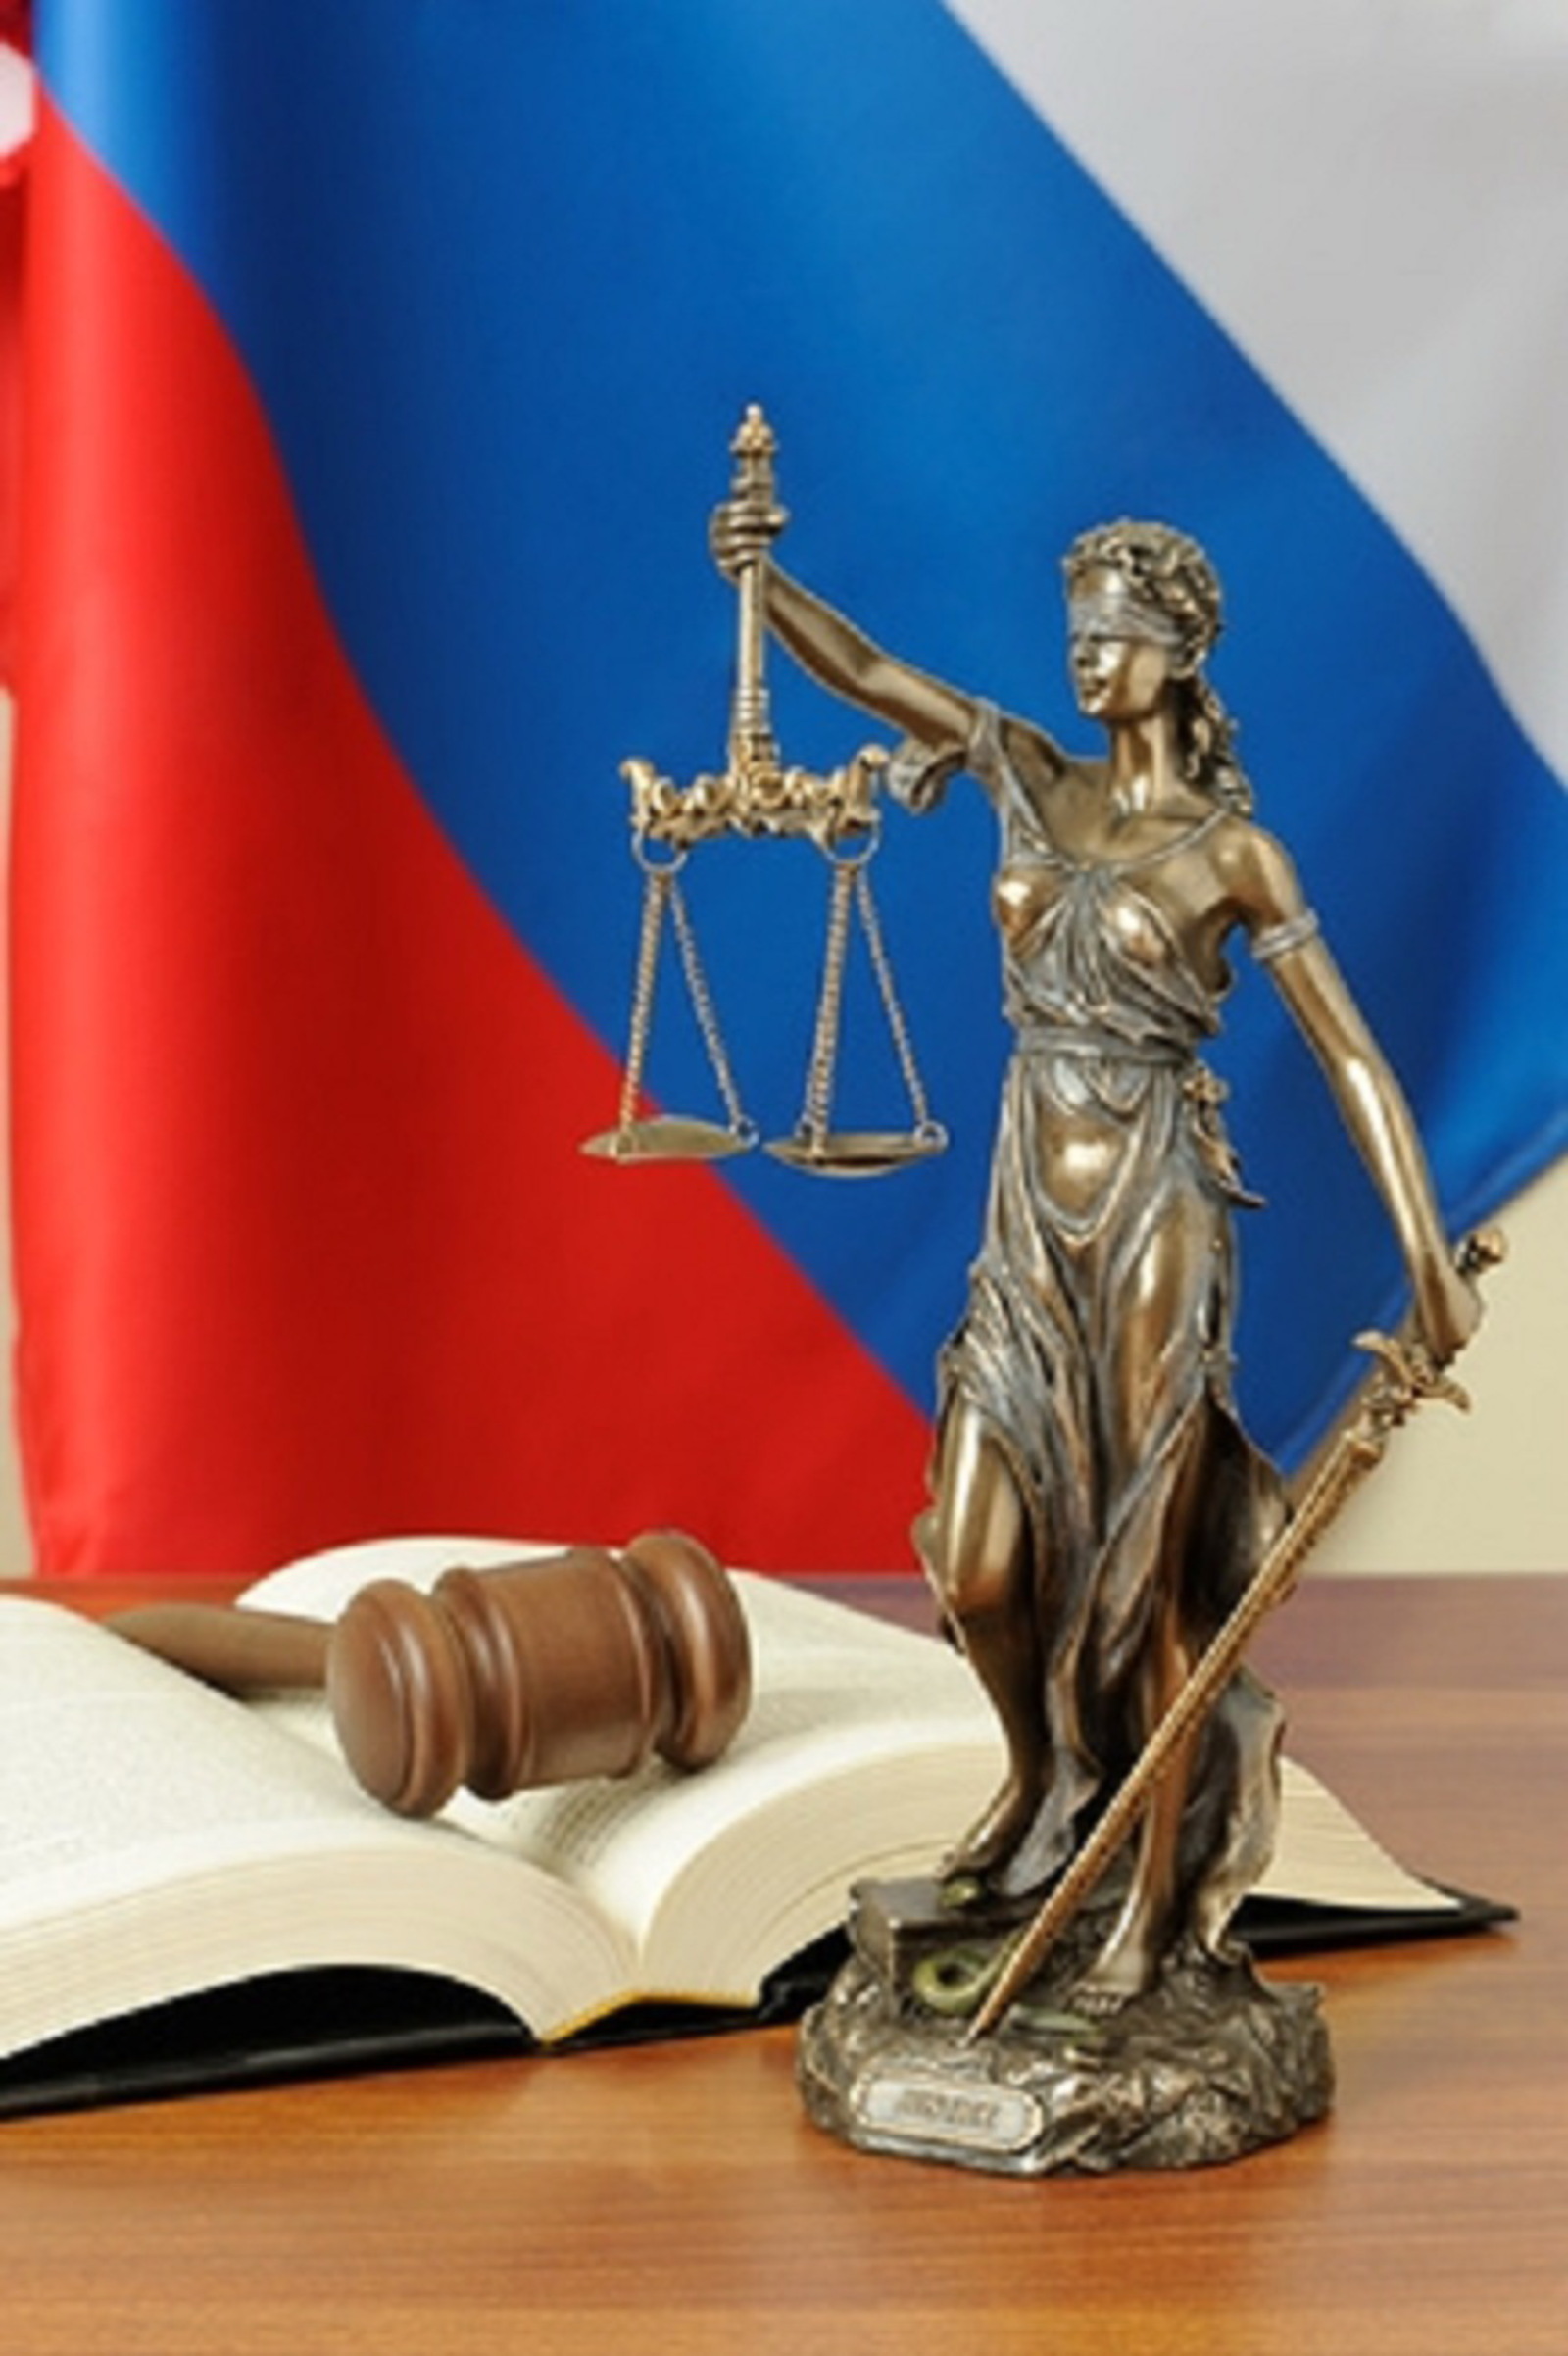 В Белорецком межрайонном суде рассмотрено уголовное дело по факту укрывательства особо тяжкого преступления